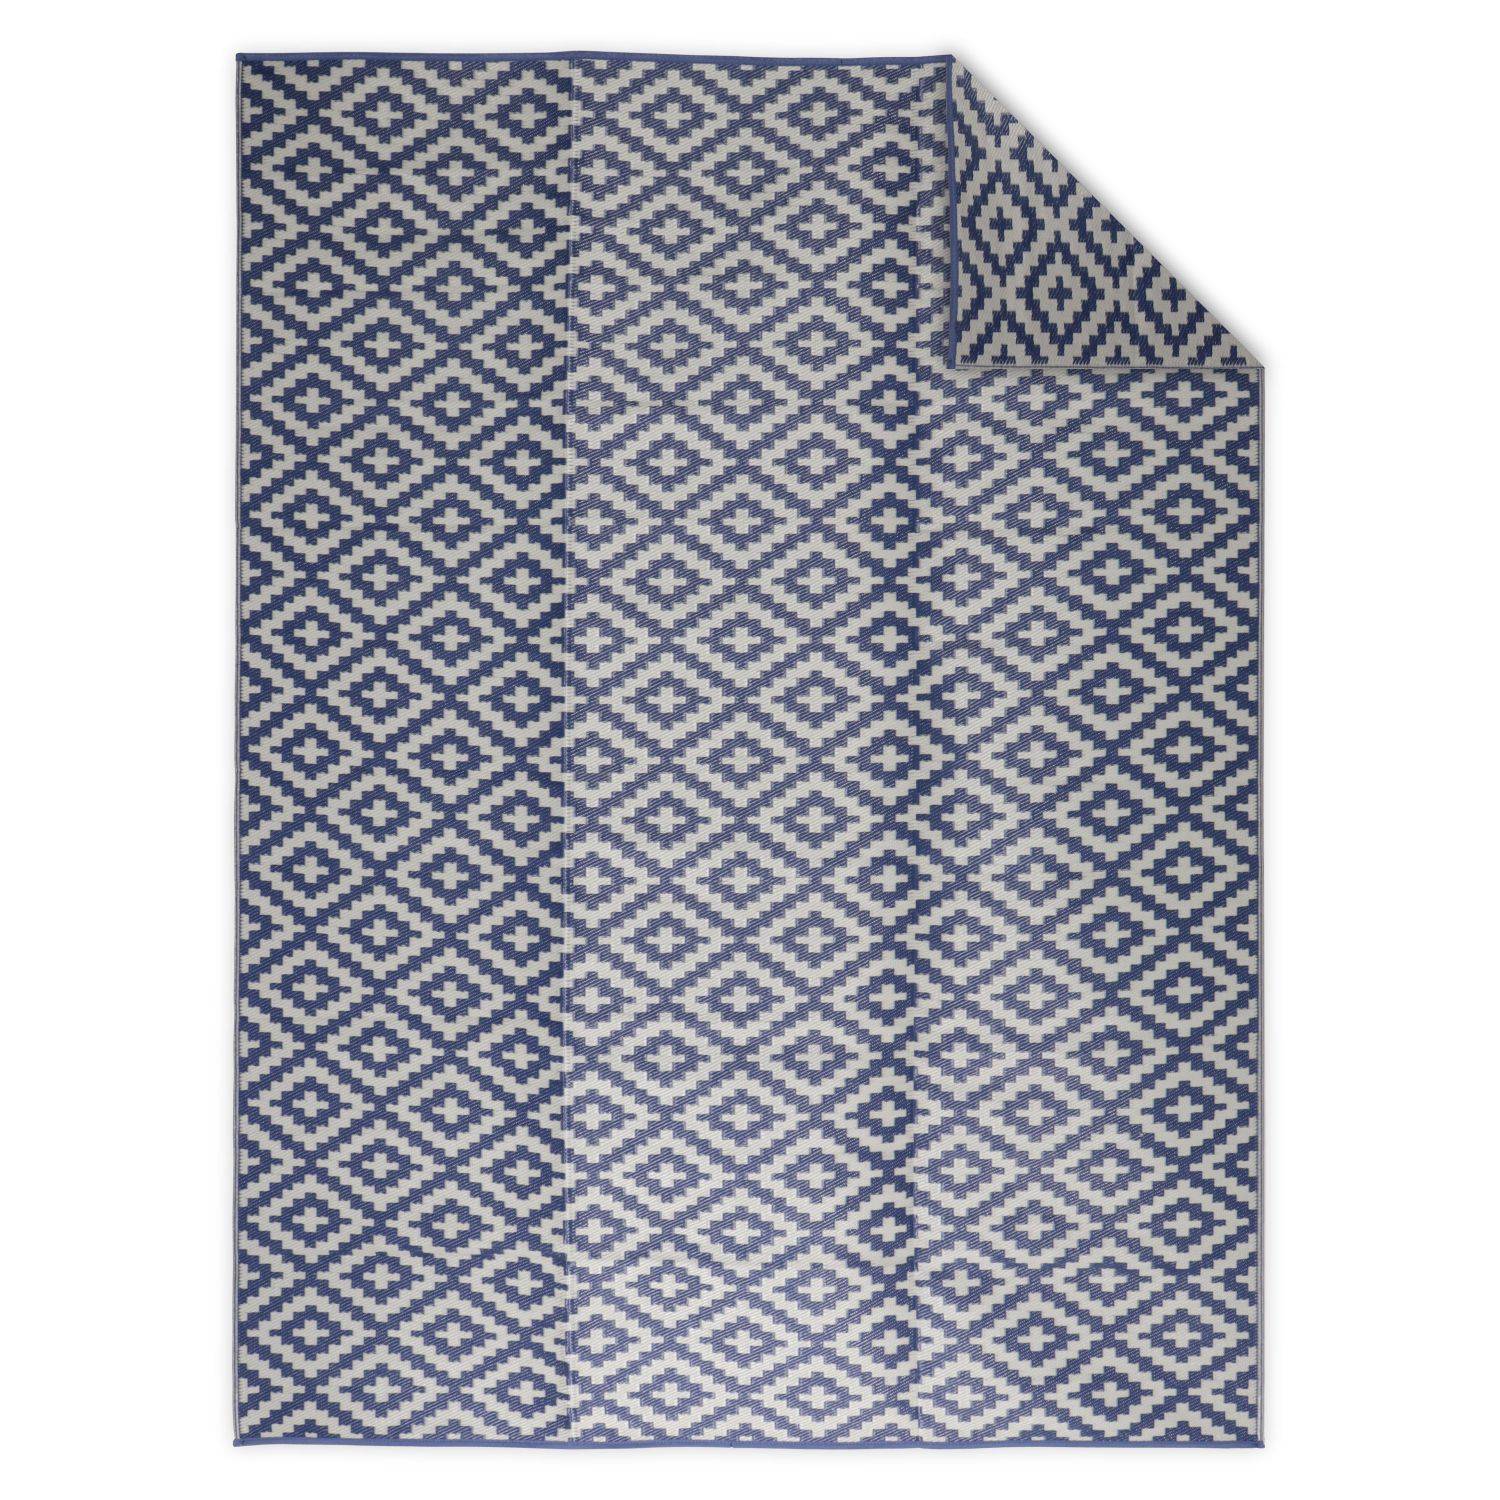 Tapis d’extérieur 270x360cm STOCKHOLM - Rectangulaire, motif losanges bleu / beige, jacquard, réversible, indoor / outdoor,,sweeek,Photo1